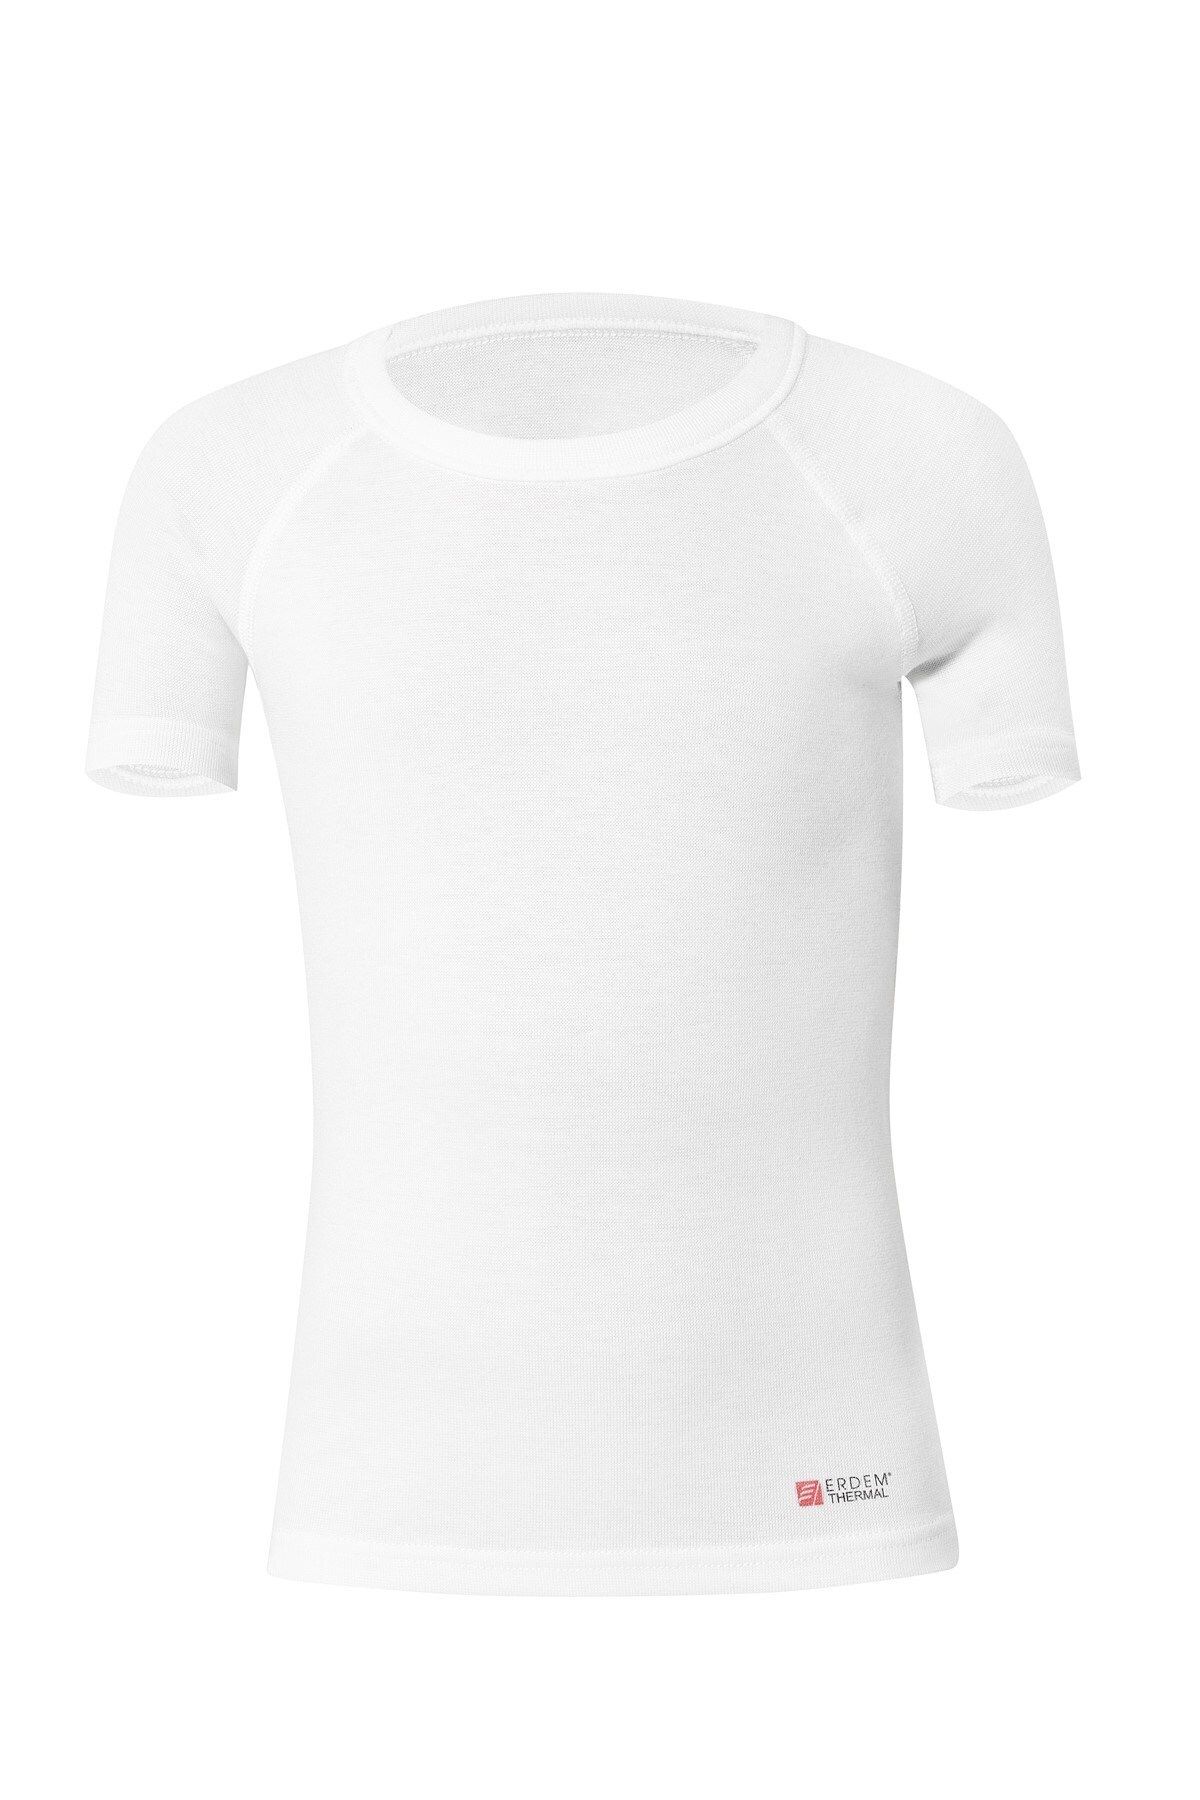 ERDEM İÇ GİYİM Erdem Beyaz Termal Çocuk Unisex T-shirt 3421